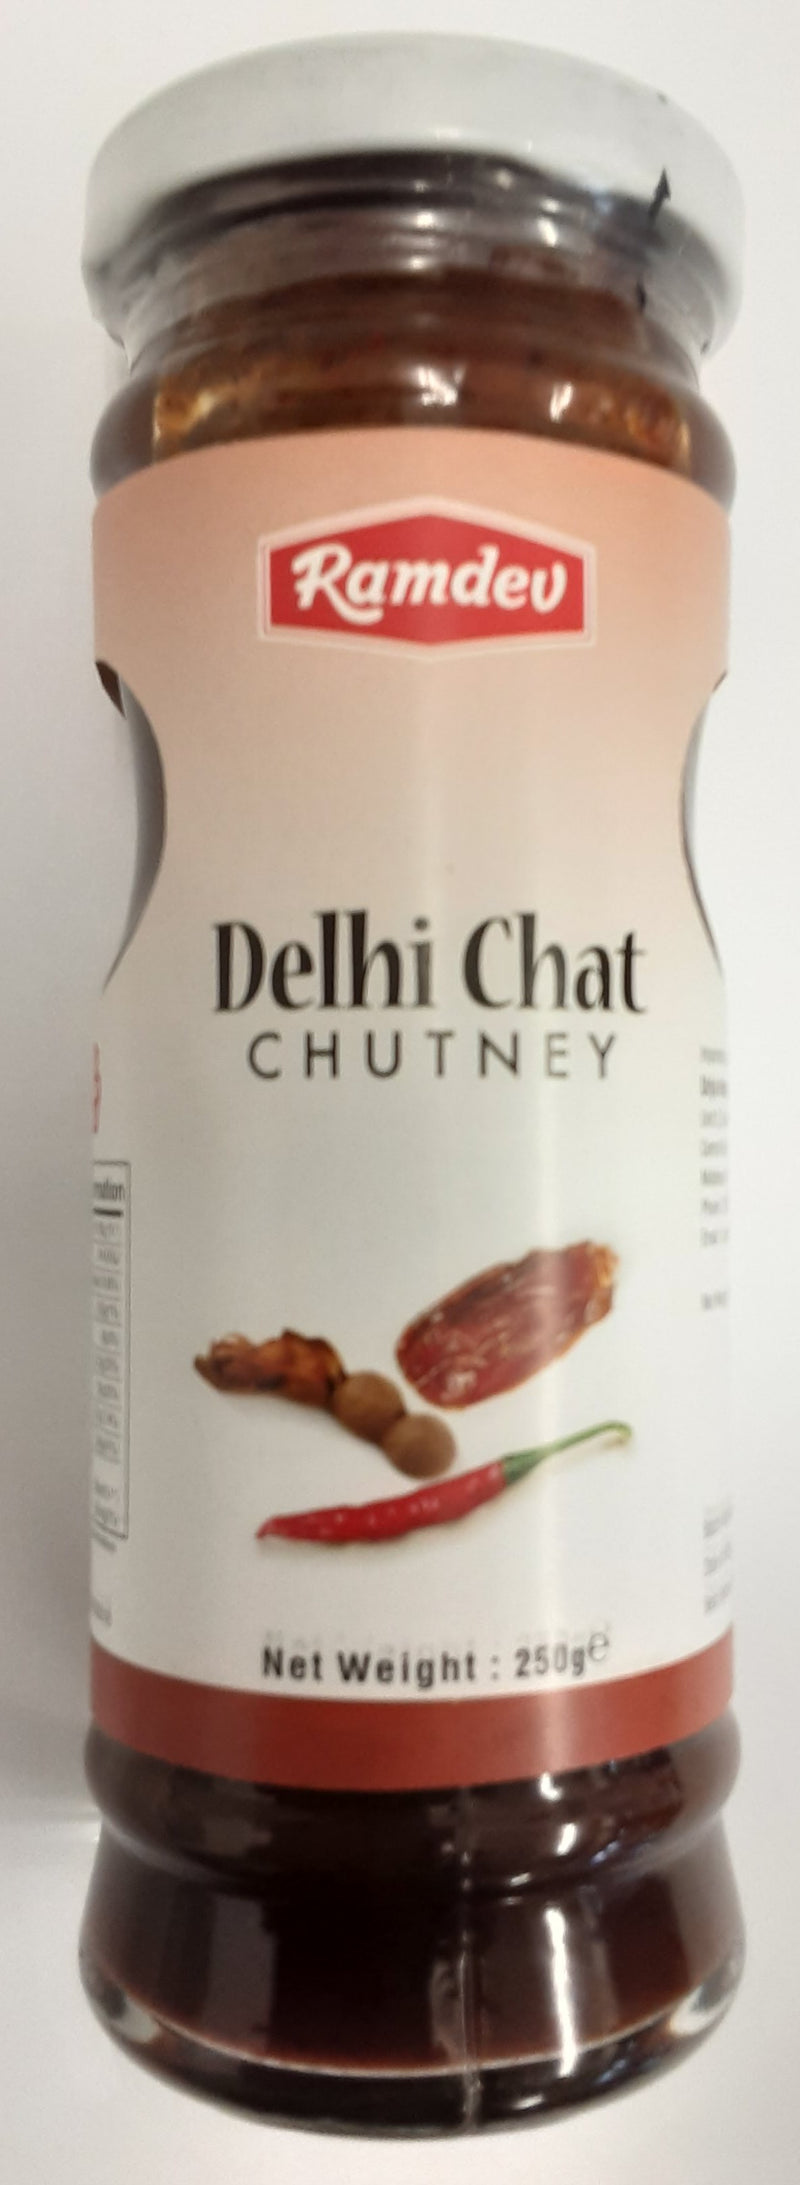 Ramdev Delhi Chat Chutney 250g